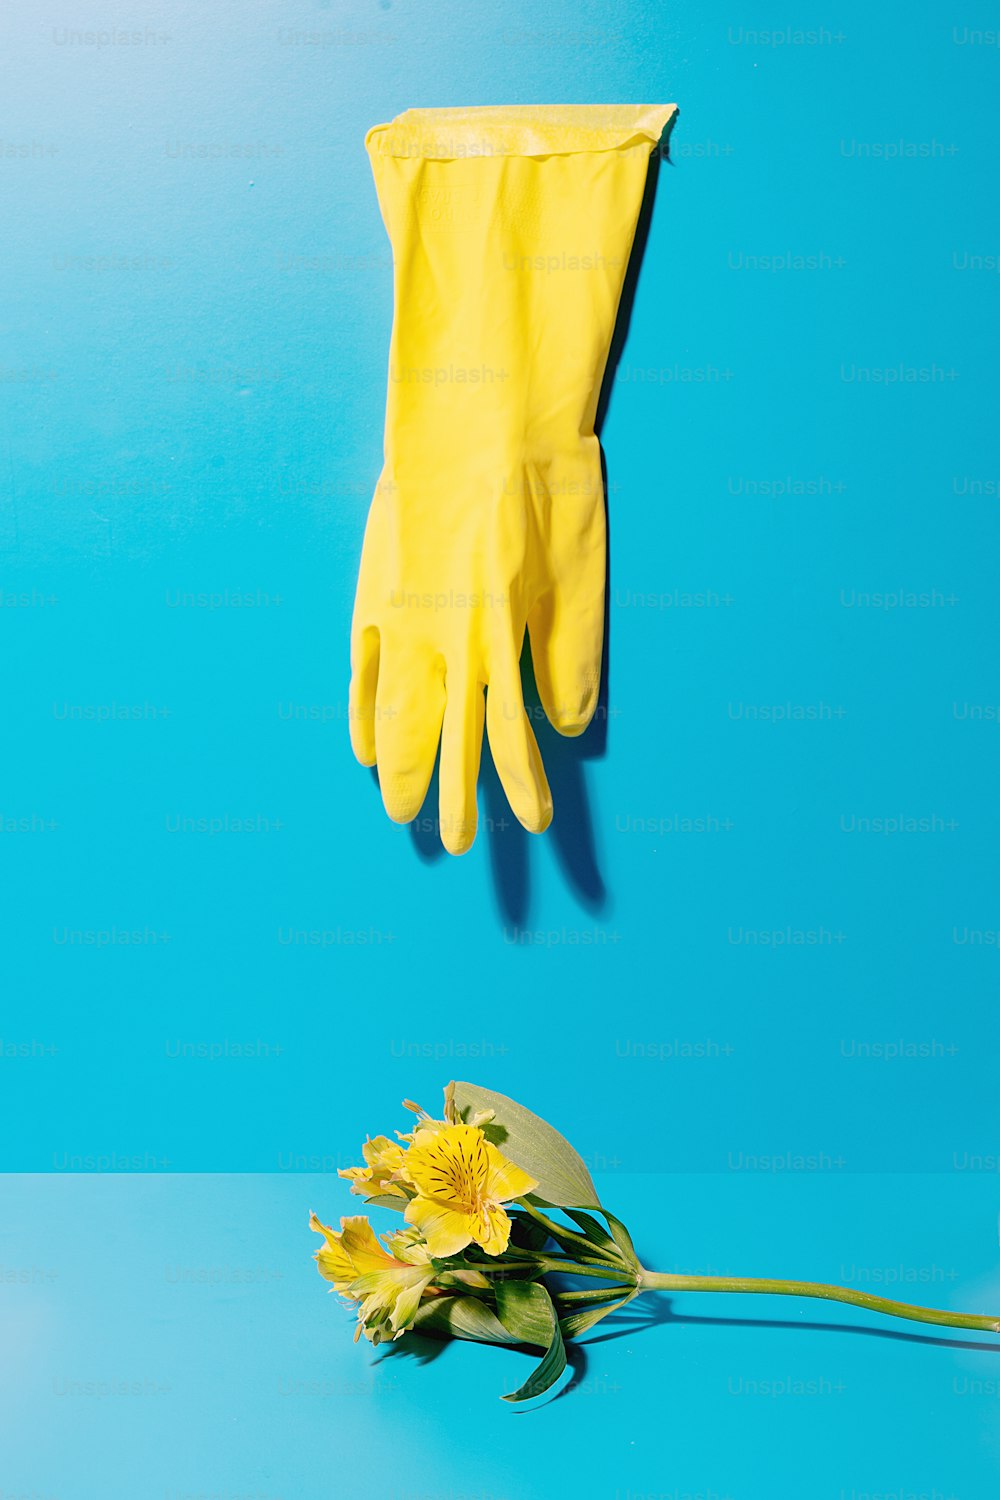 파란색 바탕에 노란색 장갑과 노란색 꽃